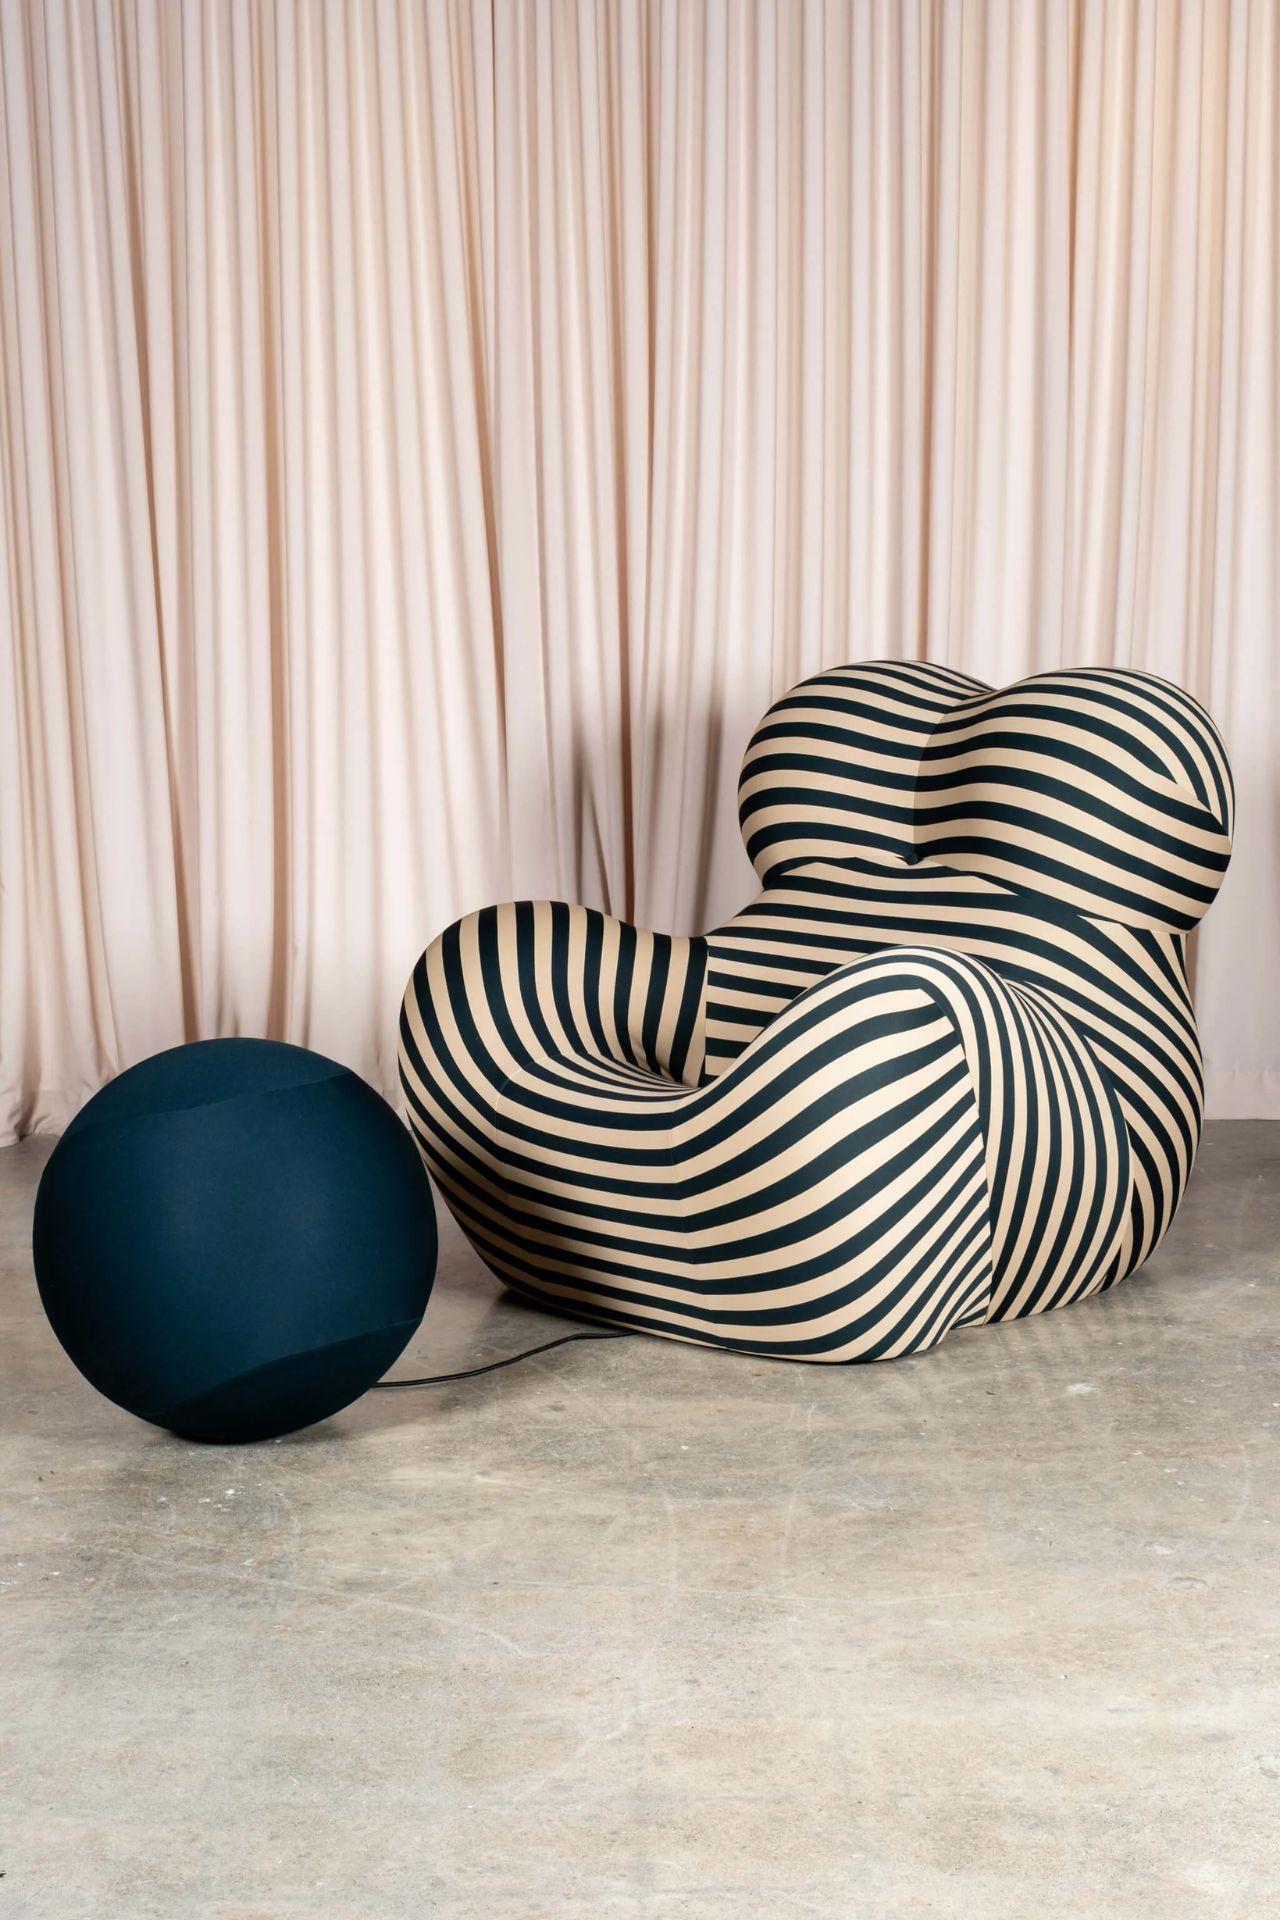 B&B Italia 'La Mamma' Up 5/6 Lounge Chair&Ottoman, Green Stripe by Gaetano Pesce For Sale 3